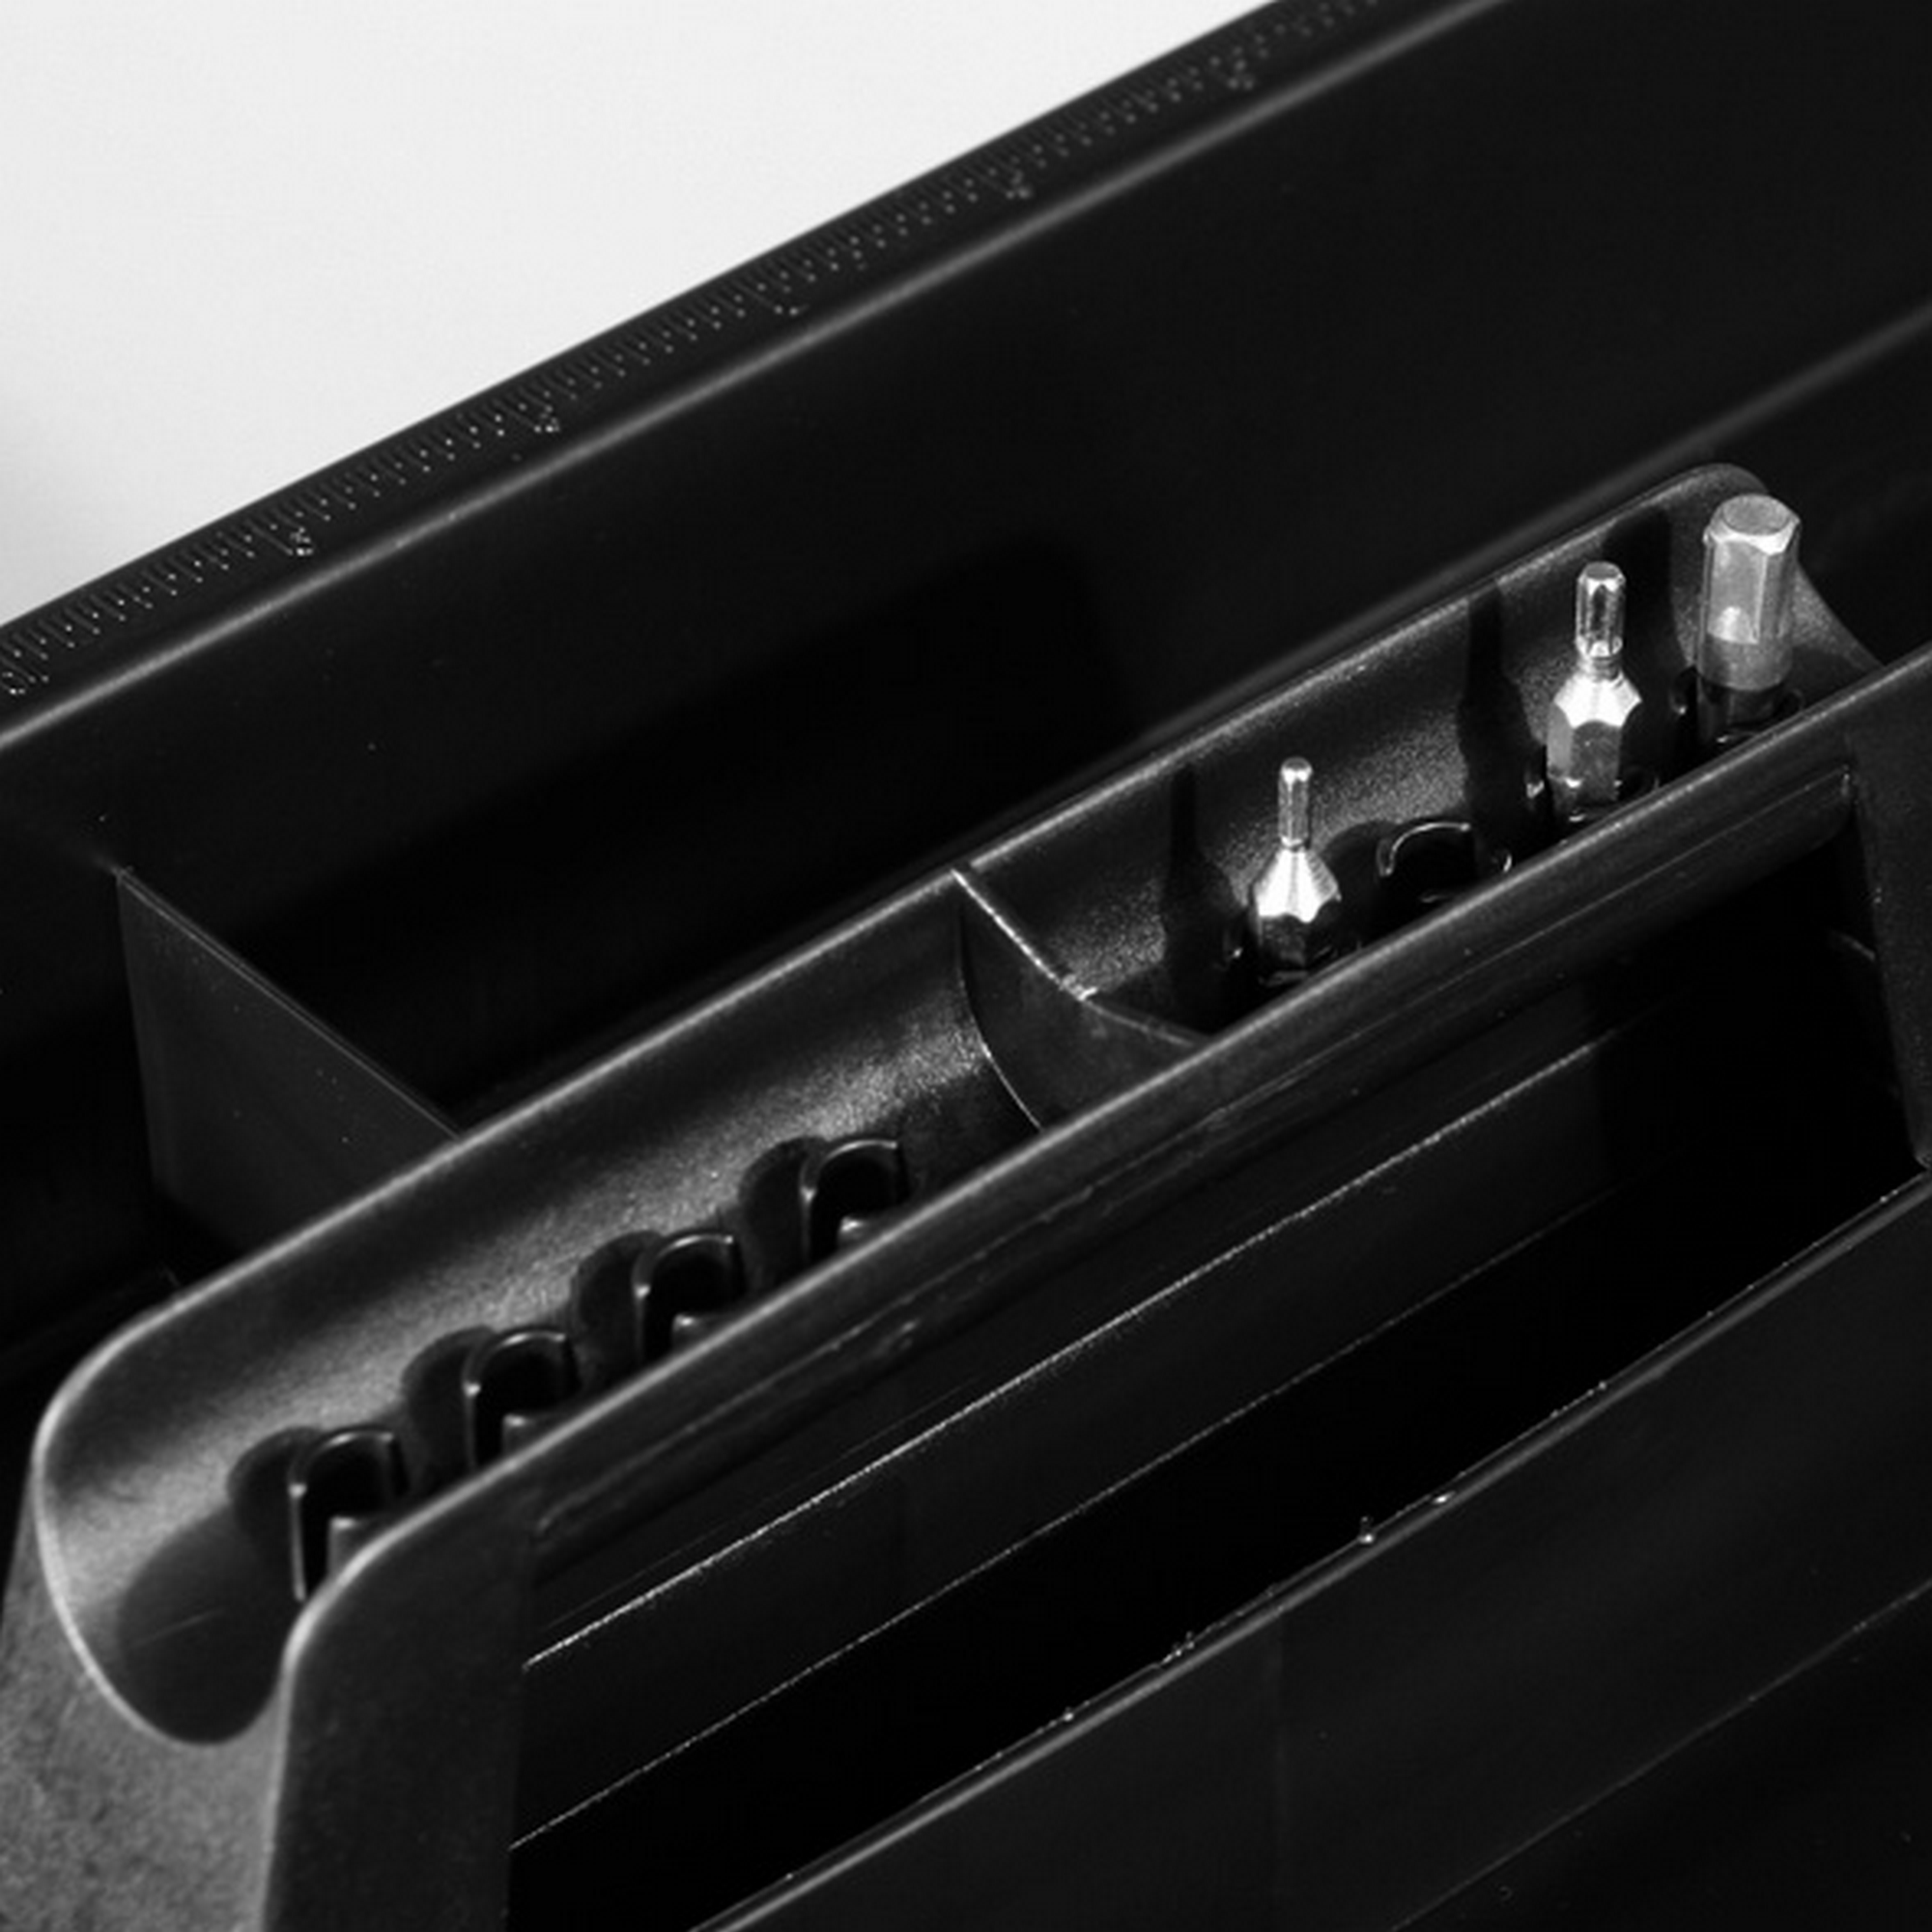 McPlus Werkzeugkoffer 'Promo S 16' schwarz 40 x 22 x 20 cm + product picture